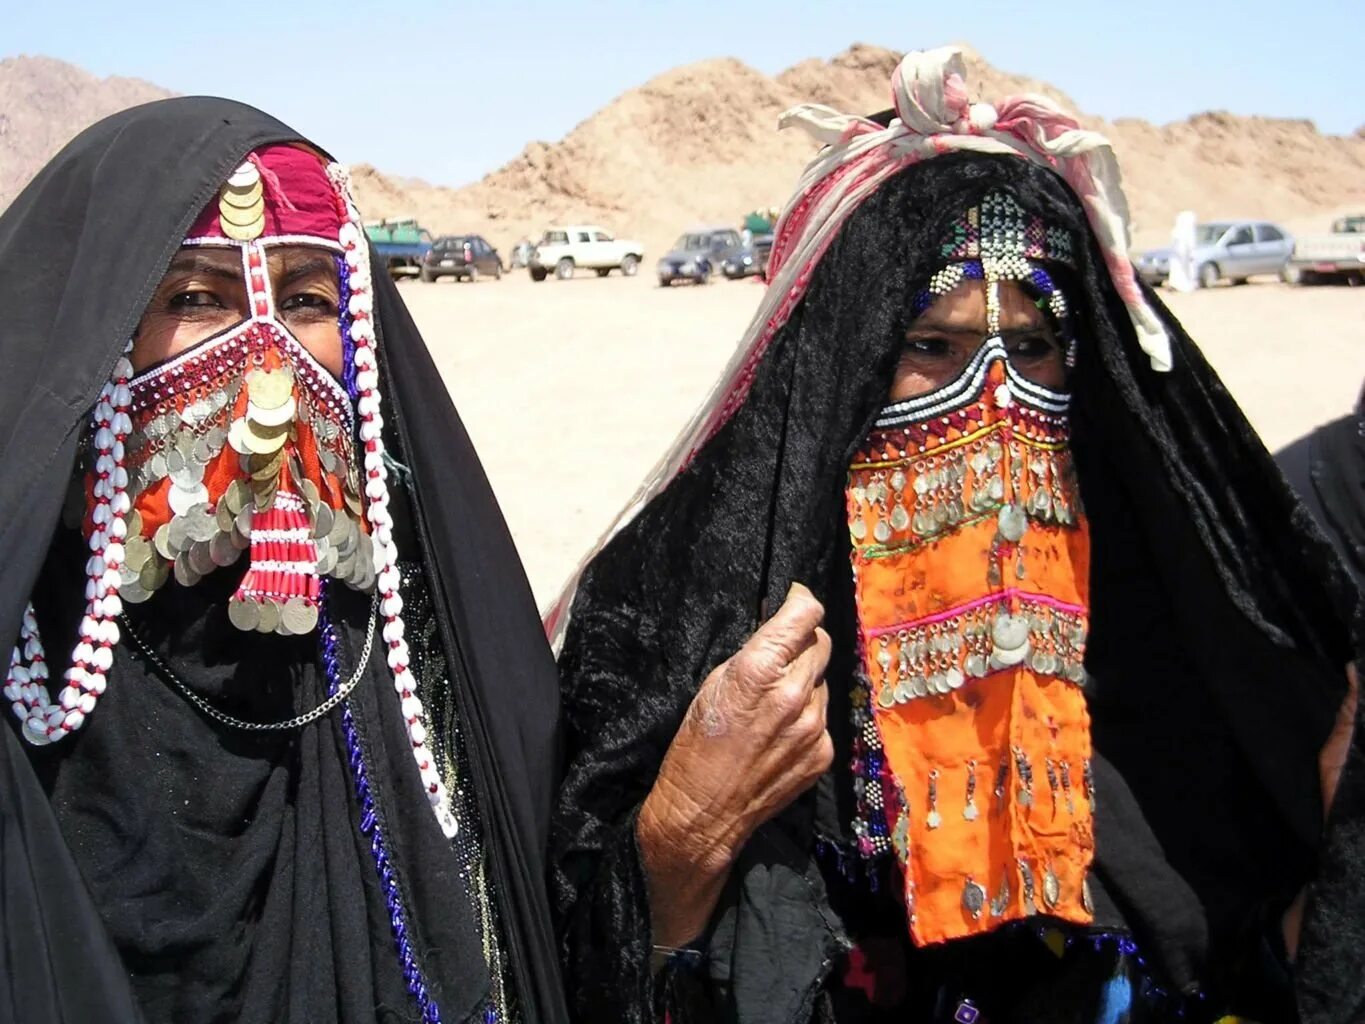 Верхняя одежда бедуинов 6 букв. Бурка бедуинки. Бедуины Саудовской Аравии. Марокко чадра. Бедуины Иордании.